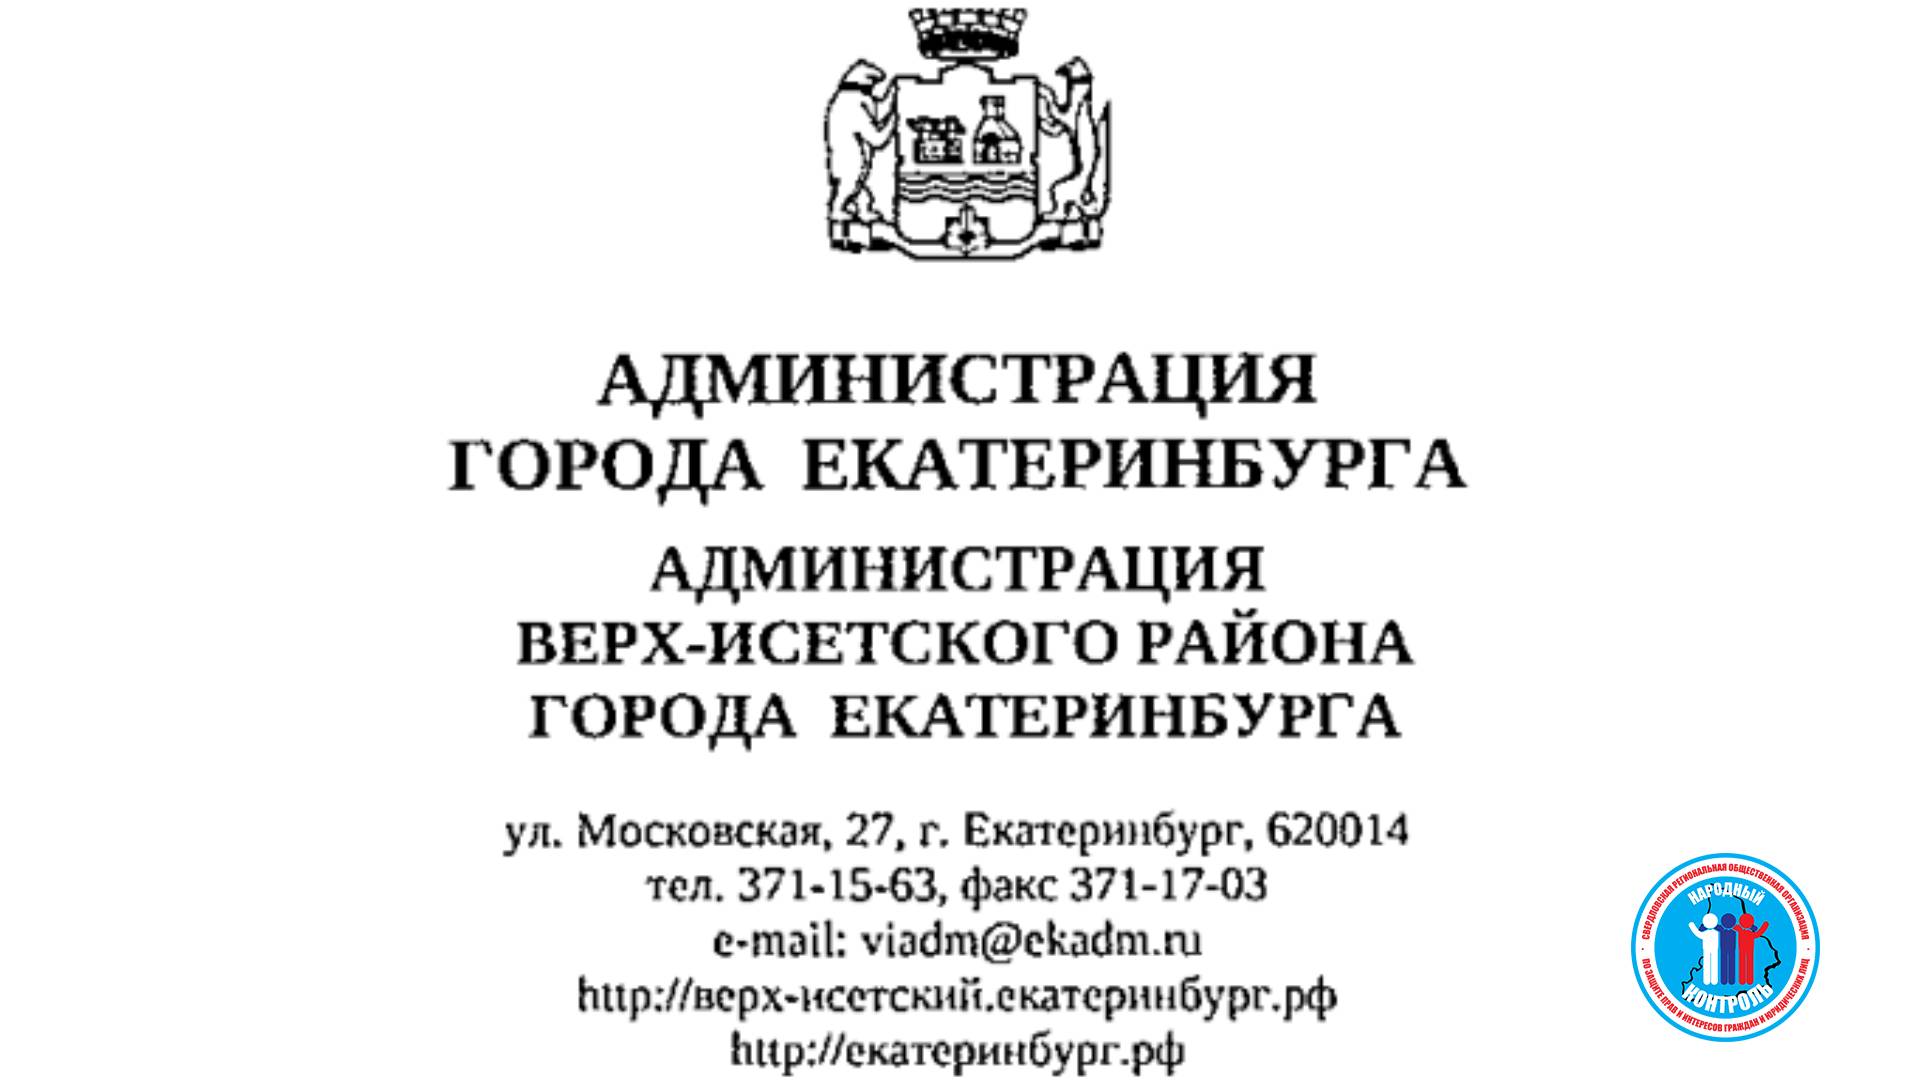 Администрация Верх-Исетского р-на Екатеринбурга